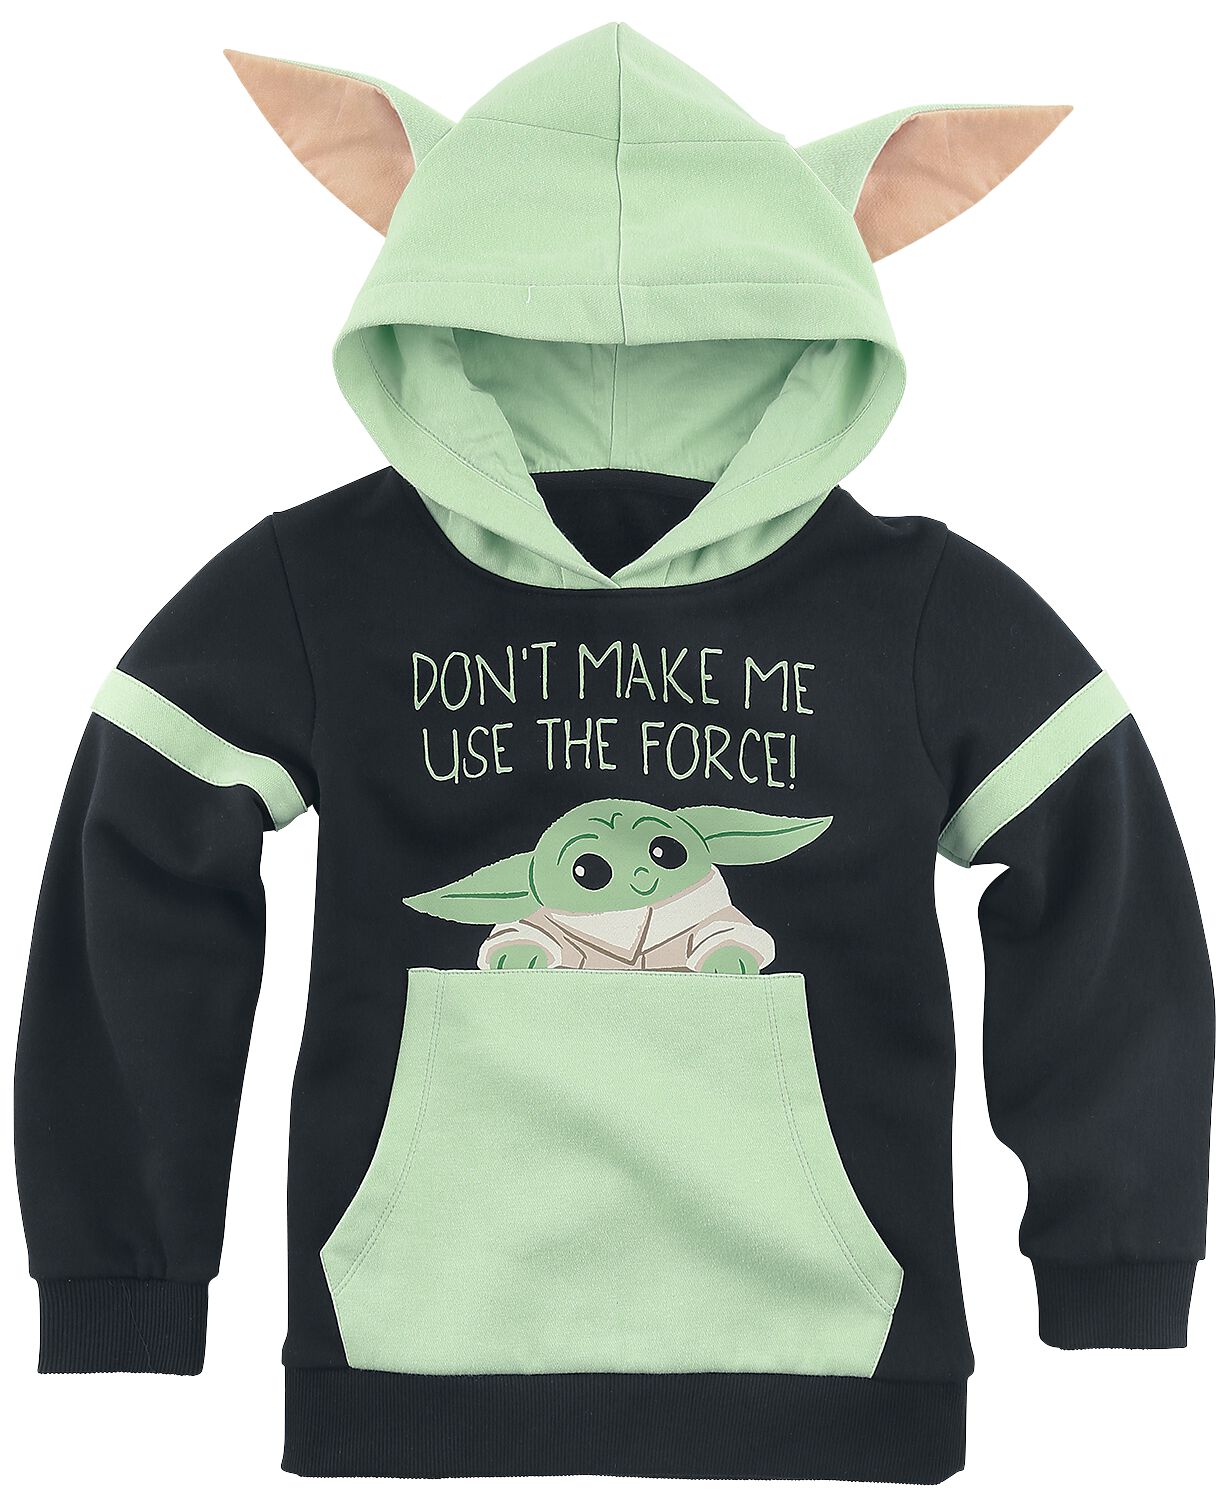 Star Wars Kapuzenpullover für Kinder - Don`t Make Me Use The Force! - für Mädchen & Jungen - schwarz/grün  - EMP exklusives Merchandise!